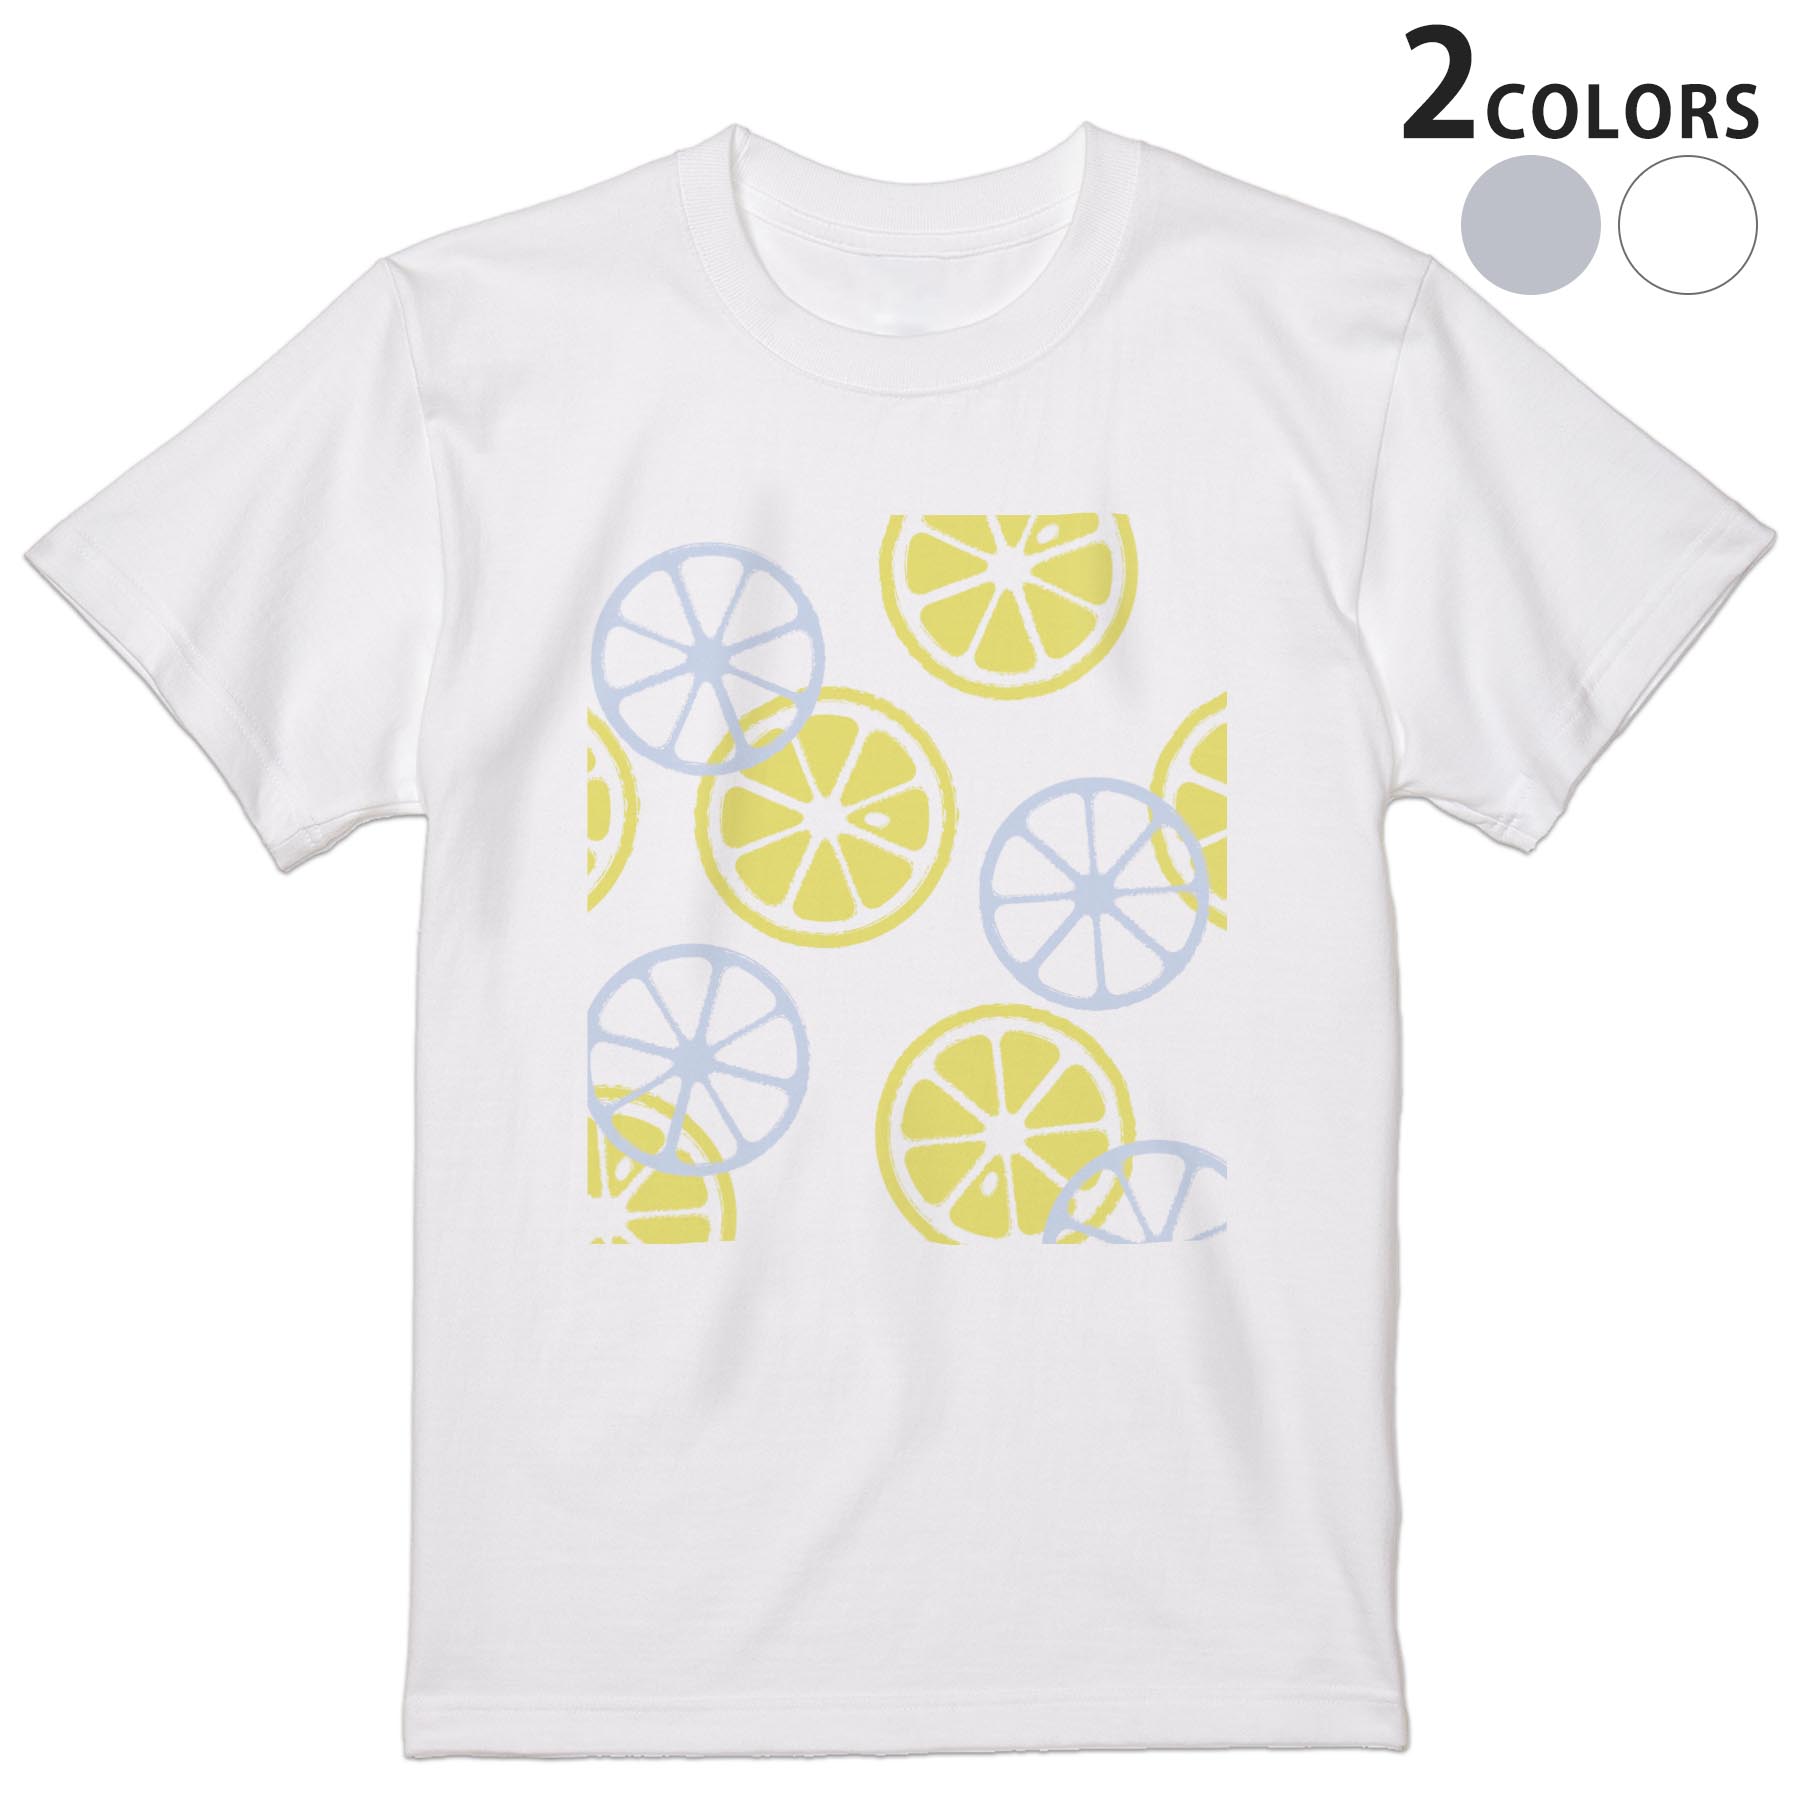 メンズ デザインTシャツ レビューを書けば送料当店負担 tシャツ 半袖 ホワイト グレー デザイン XS S M L パステル 模様 交換無料 黄色 Tシャツ 008331 ティーシャツ XL レモン 2XL shirt T